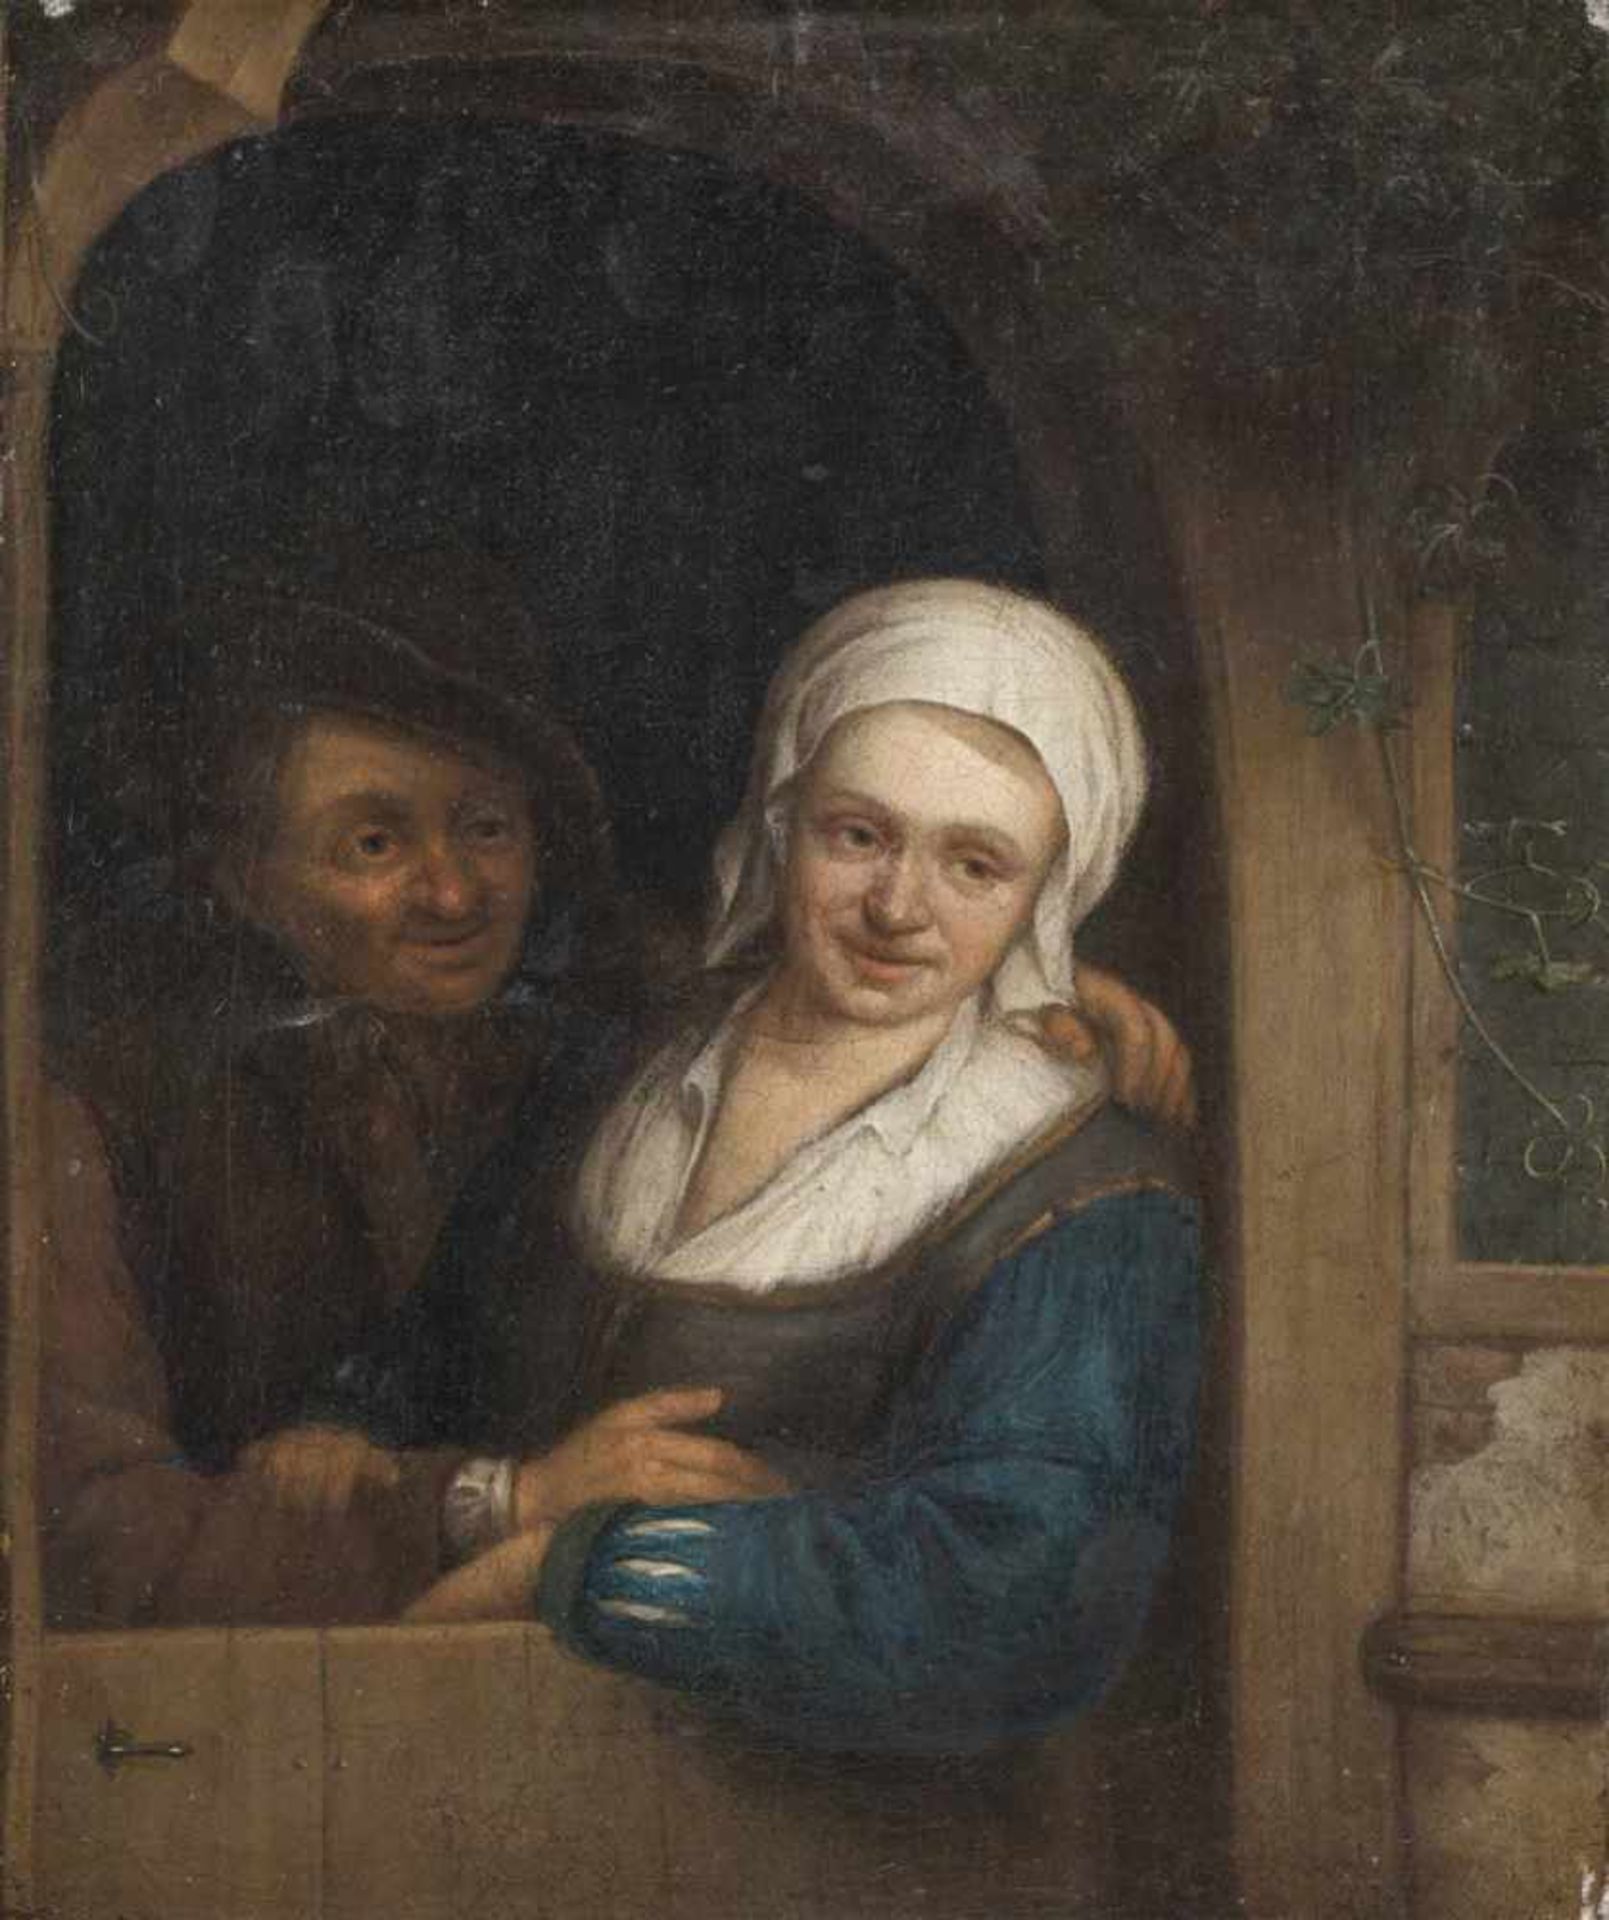 Ostade, Adriaen van (nach)Haarlem 1610 - 168432 x 27 cmPaar im Hauseingang. Öl/Lwd./Lwd.